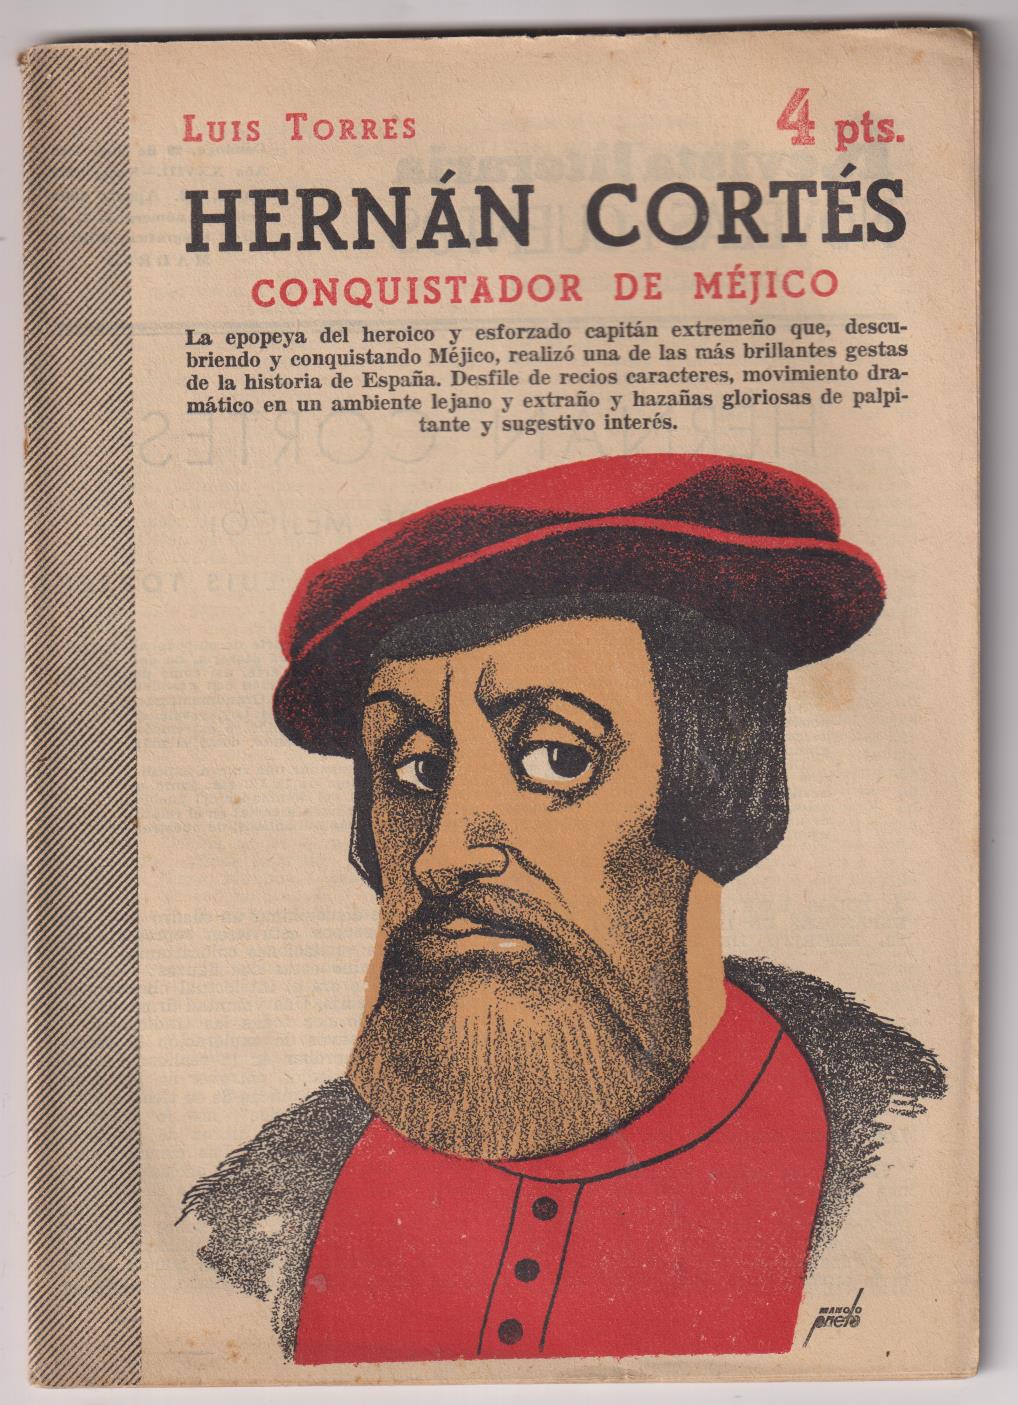 Revista Literaria Novelas y Cuentos nº 1316. Hernán Cortés por Luis Torres. Año 1956